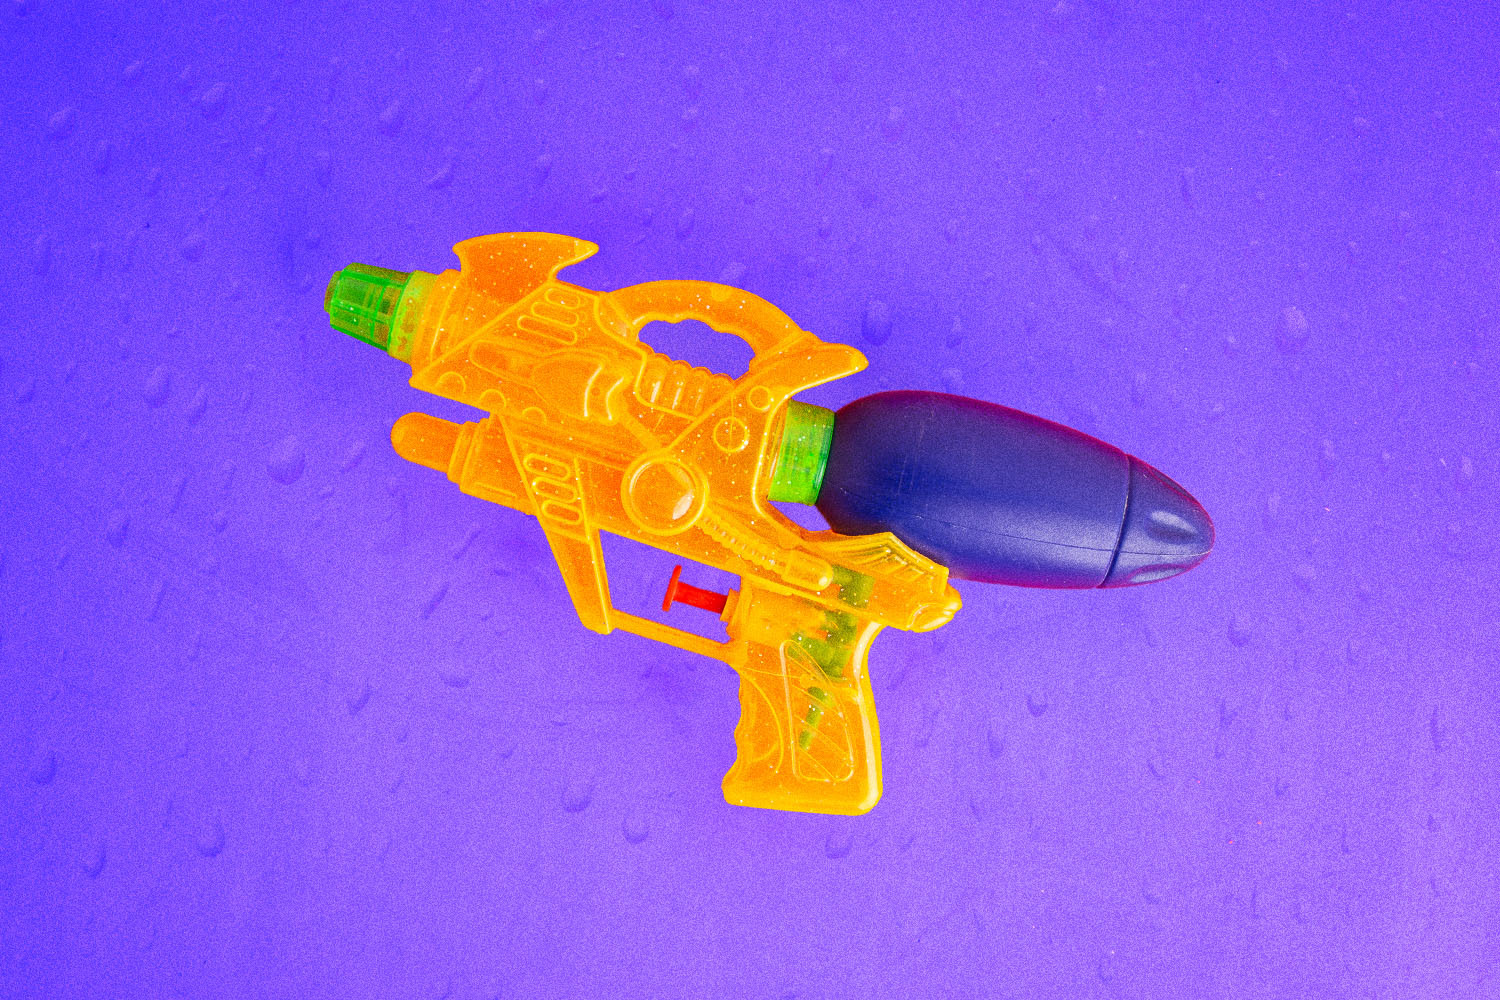 toy squirt gun on purple background